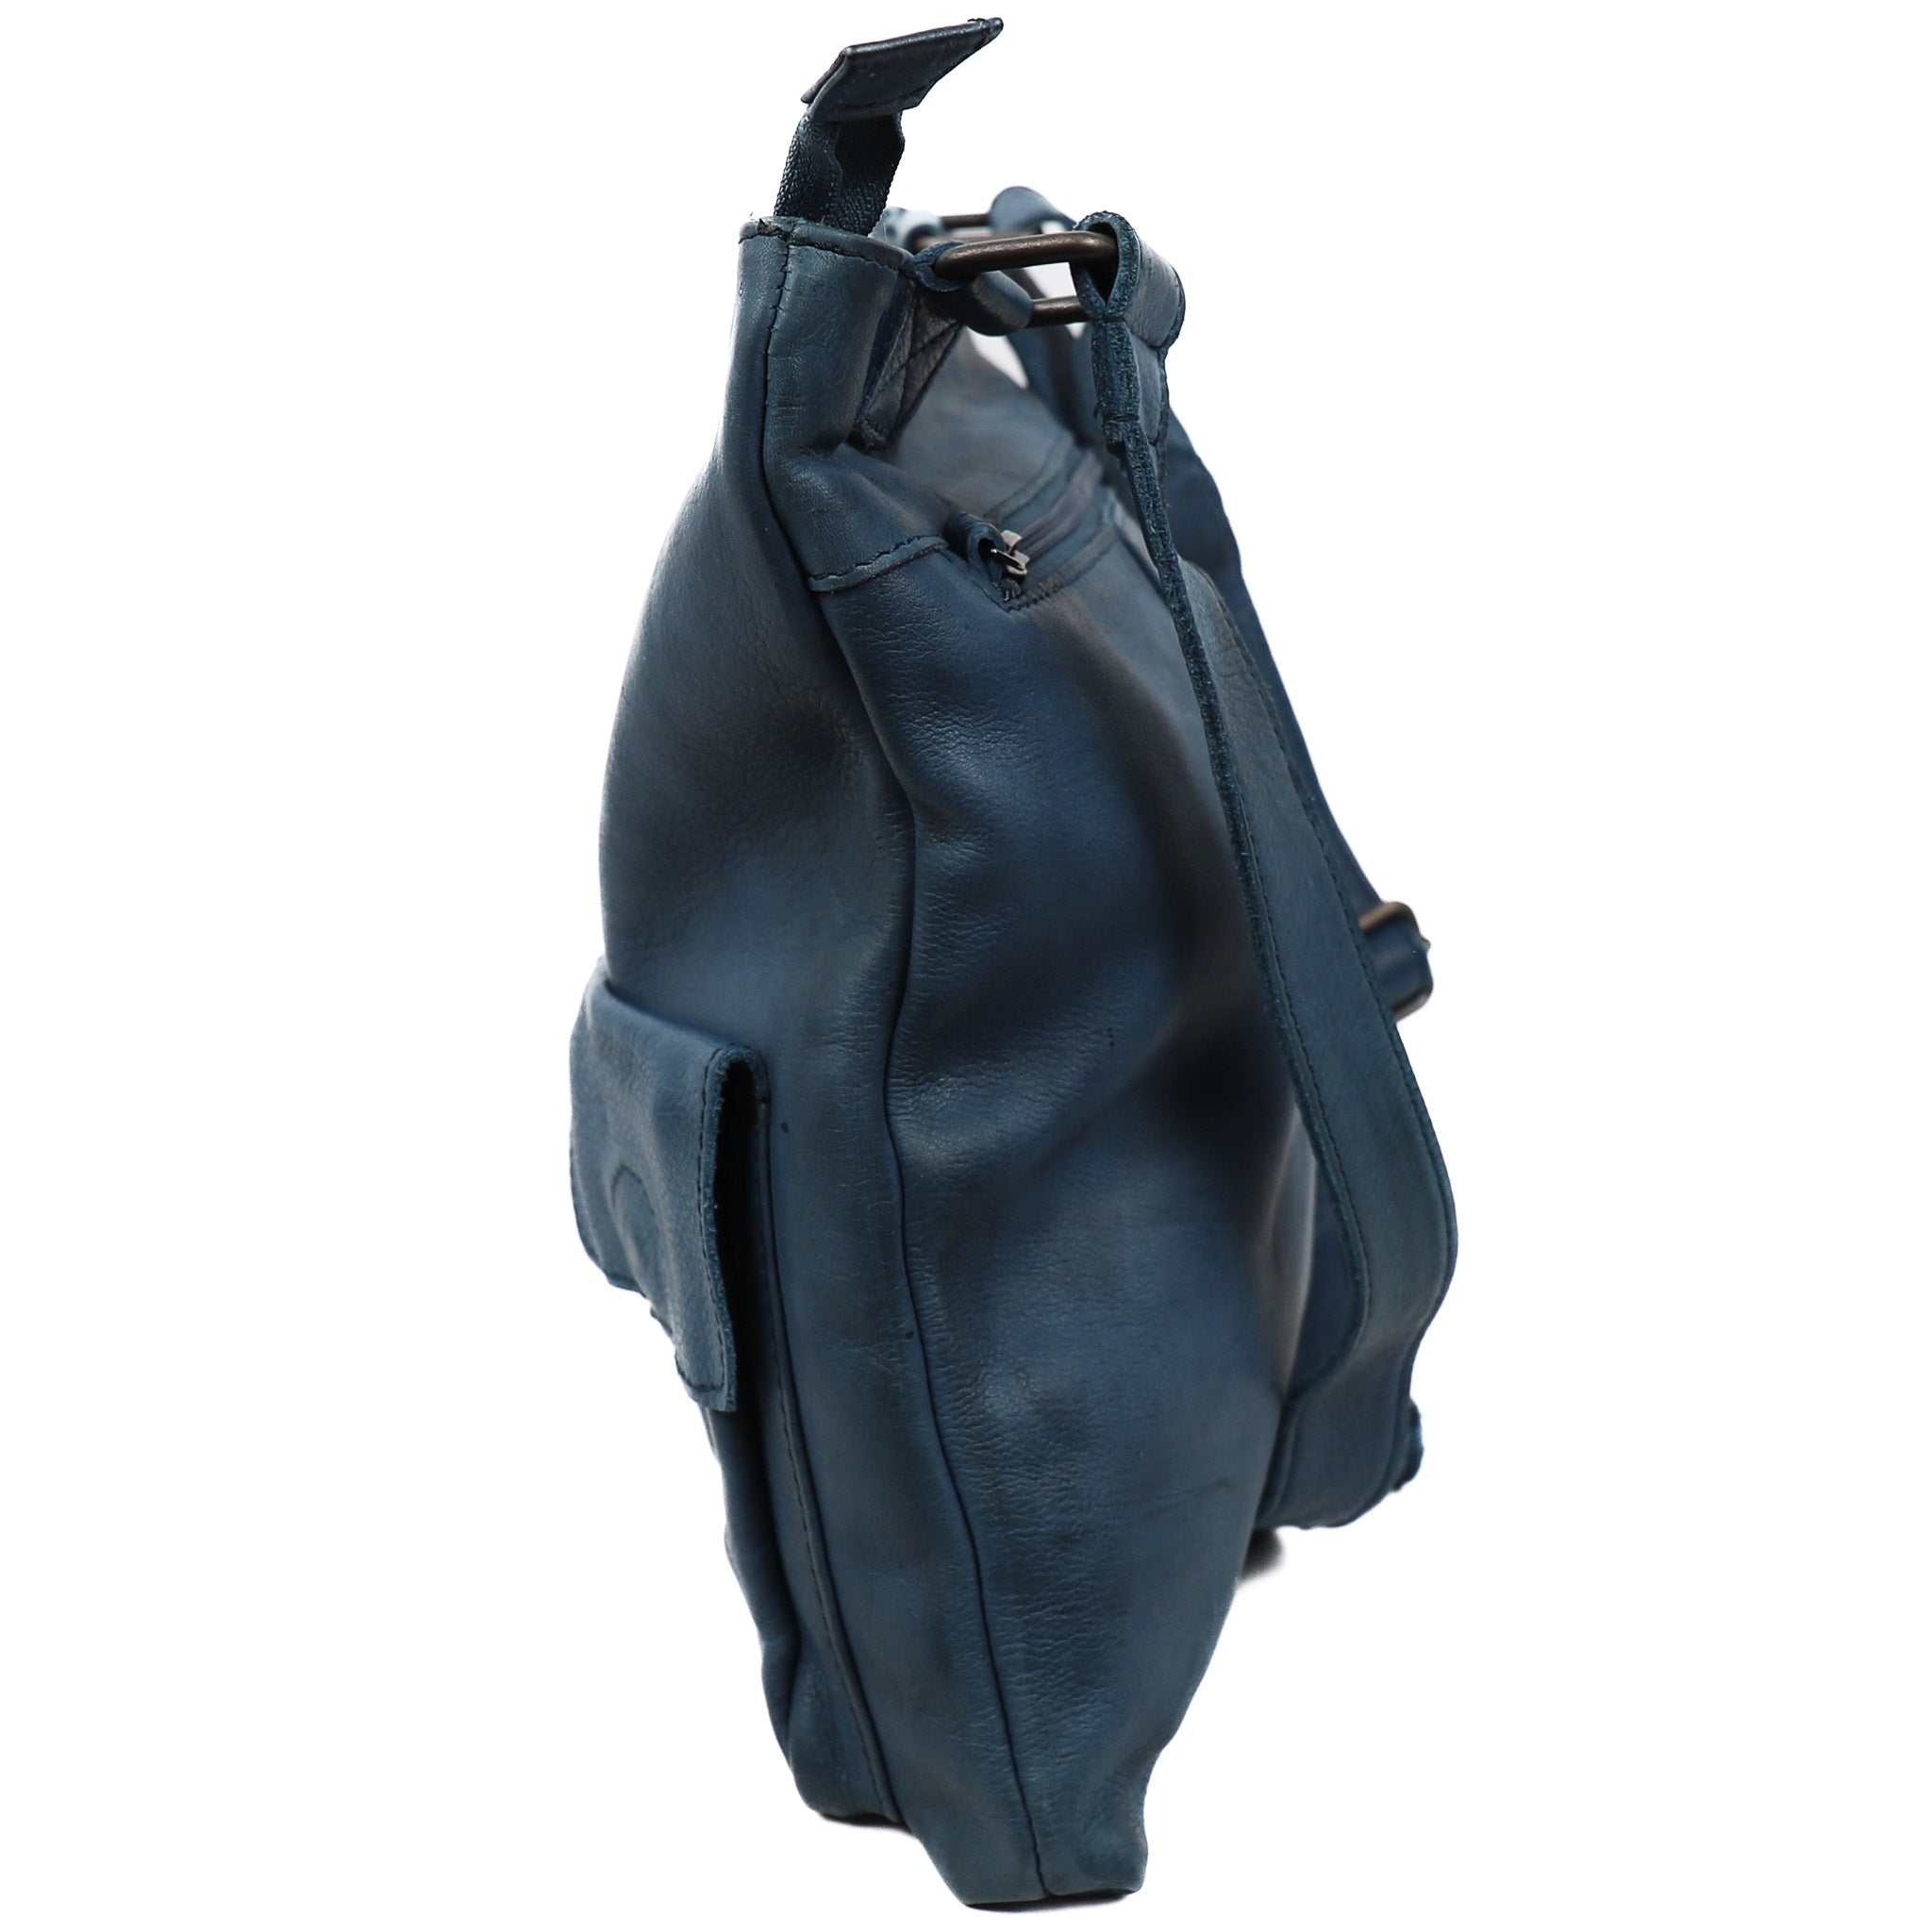 Shoulder bag 'Fabia' turquoise